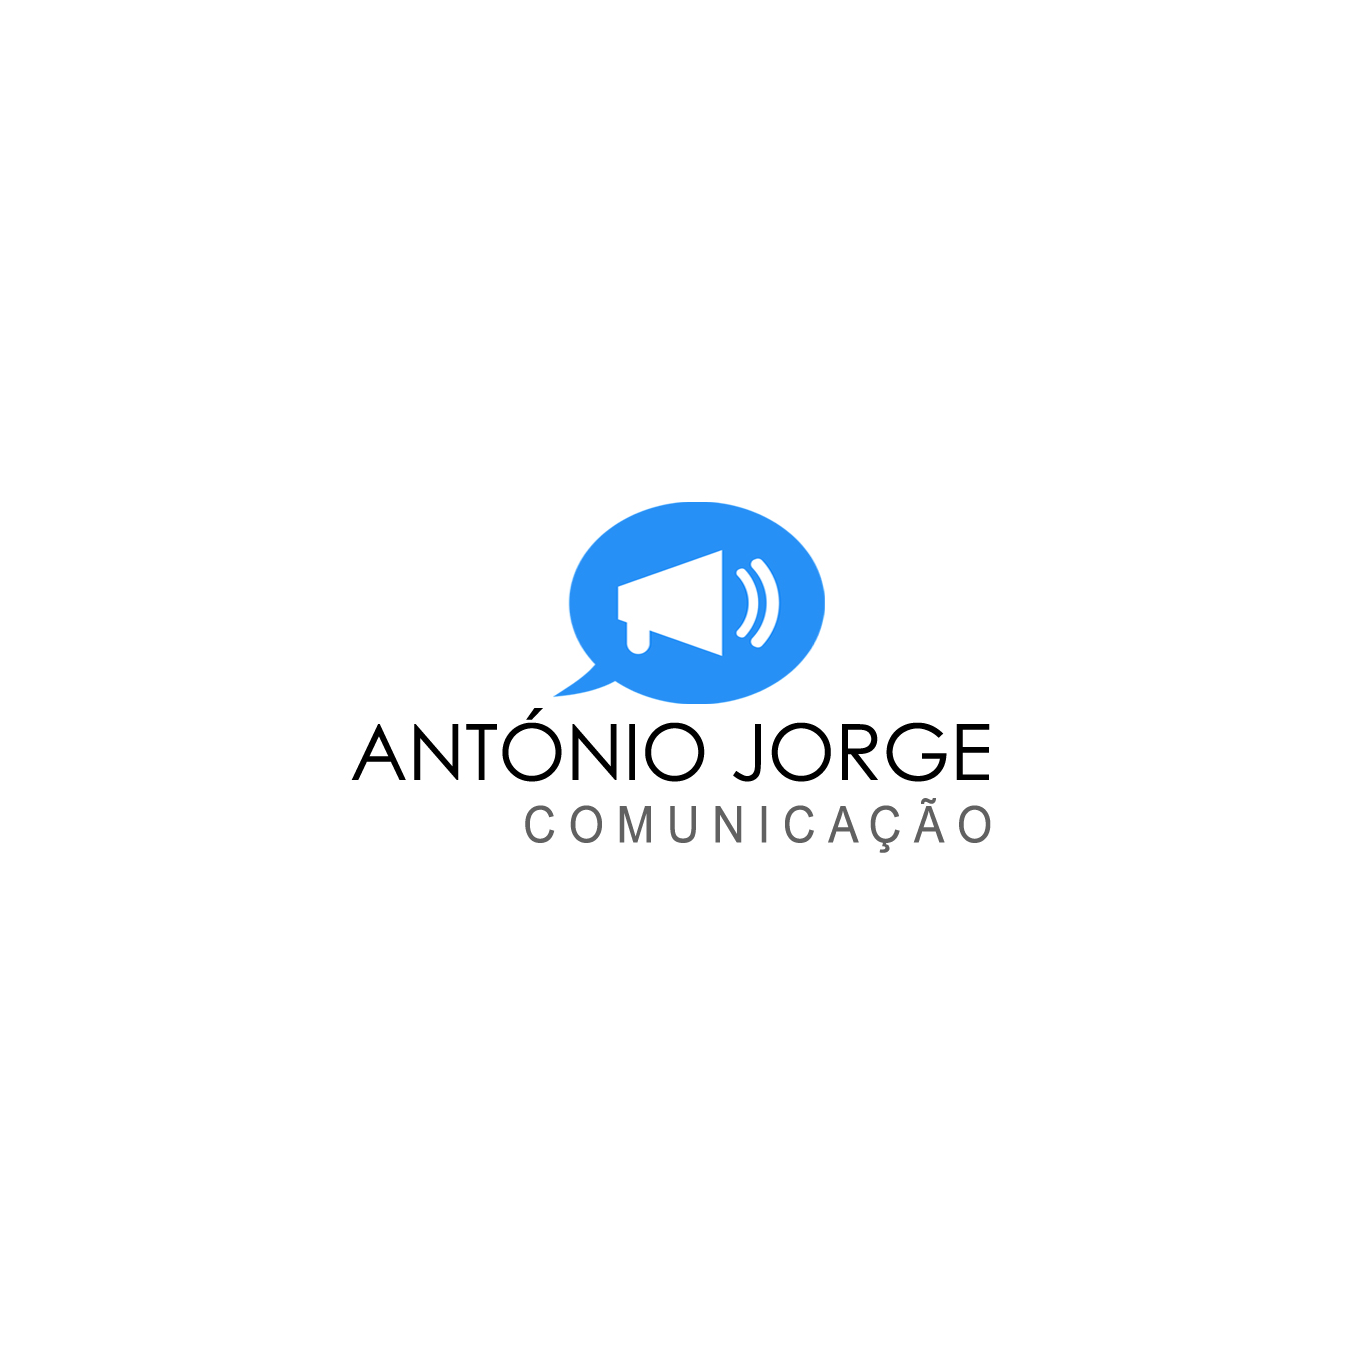 Antóniojorgecomunicacao